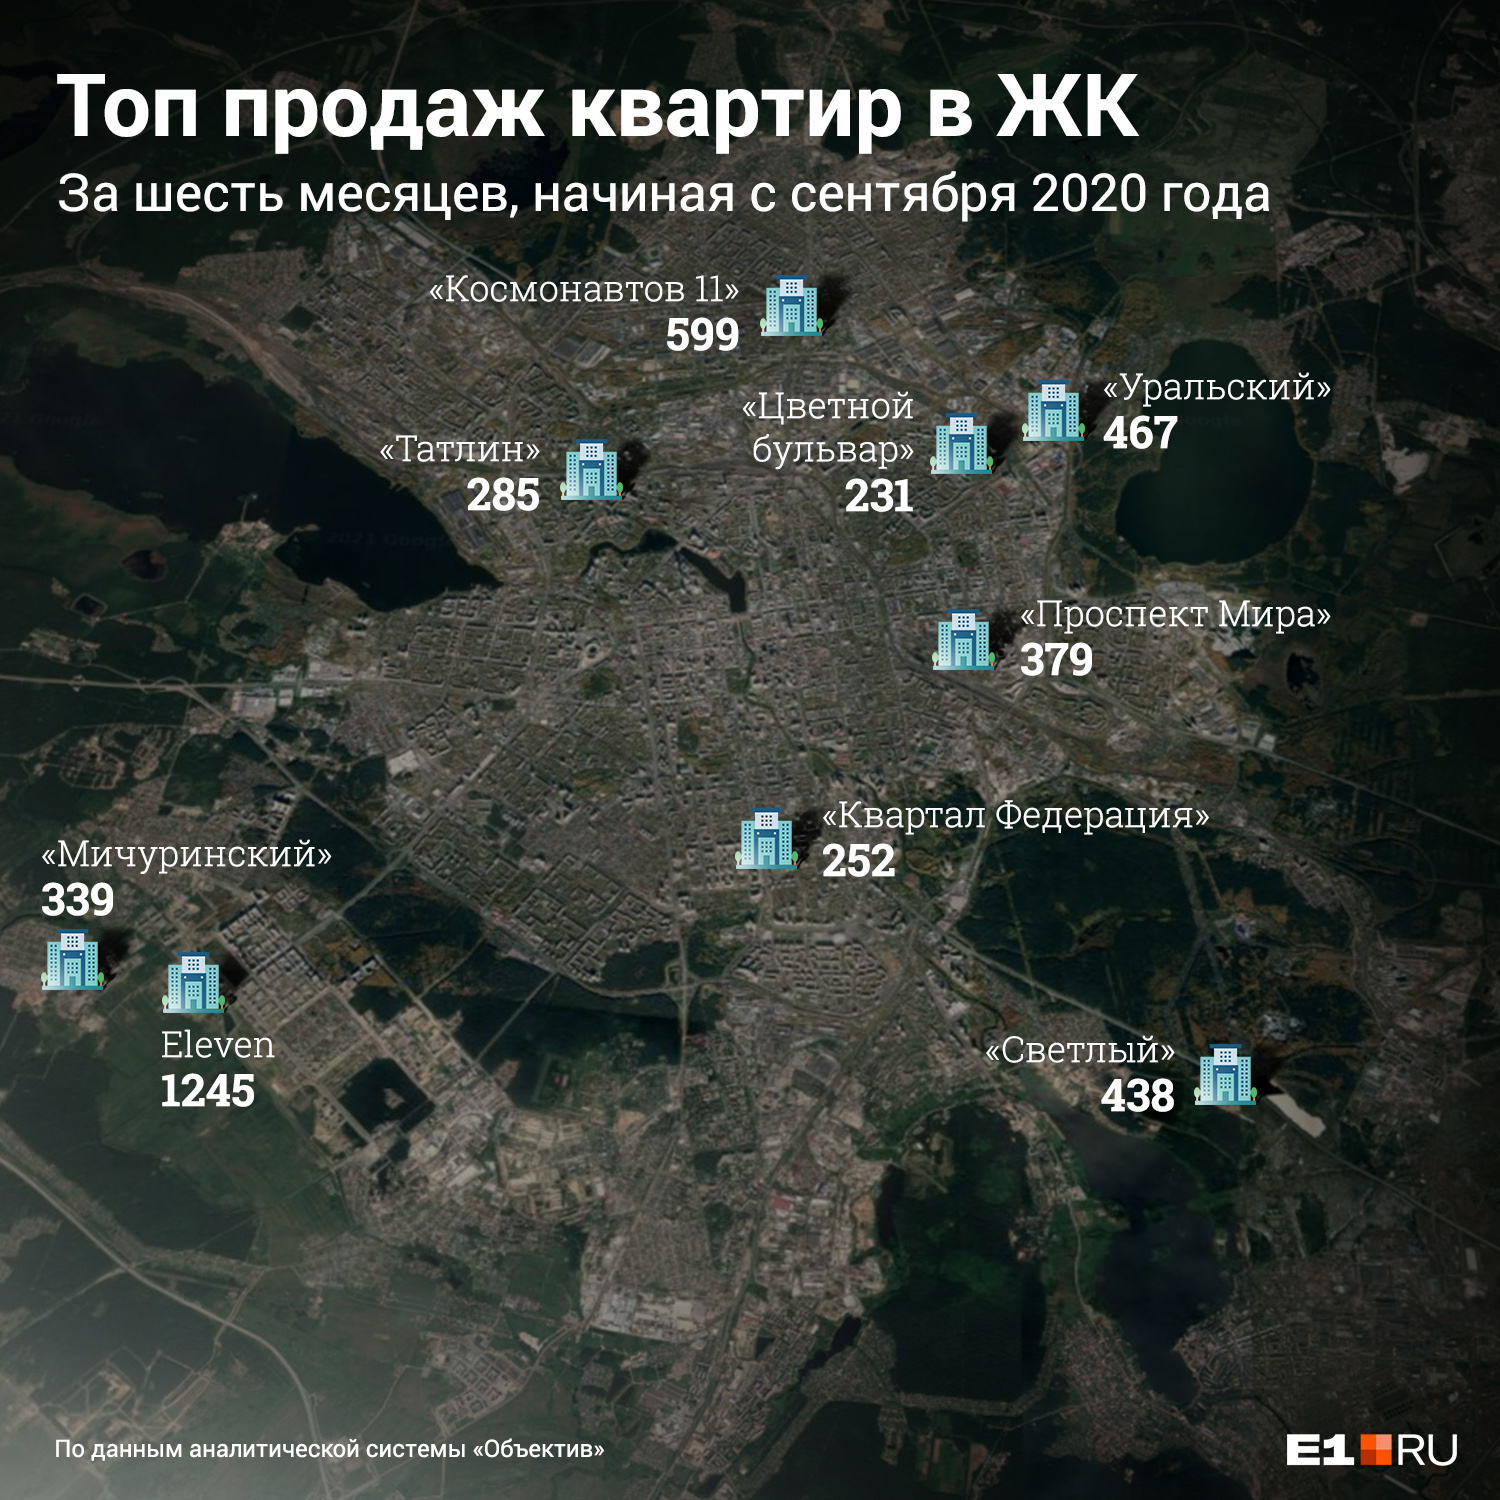 Список самых продаваемых ЖК в Екатеринбурге